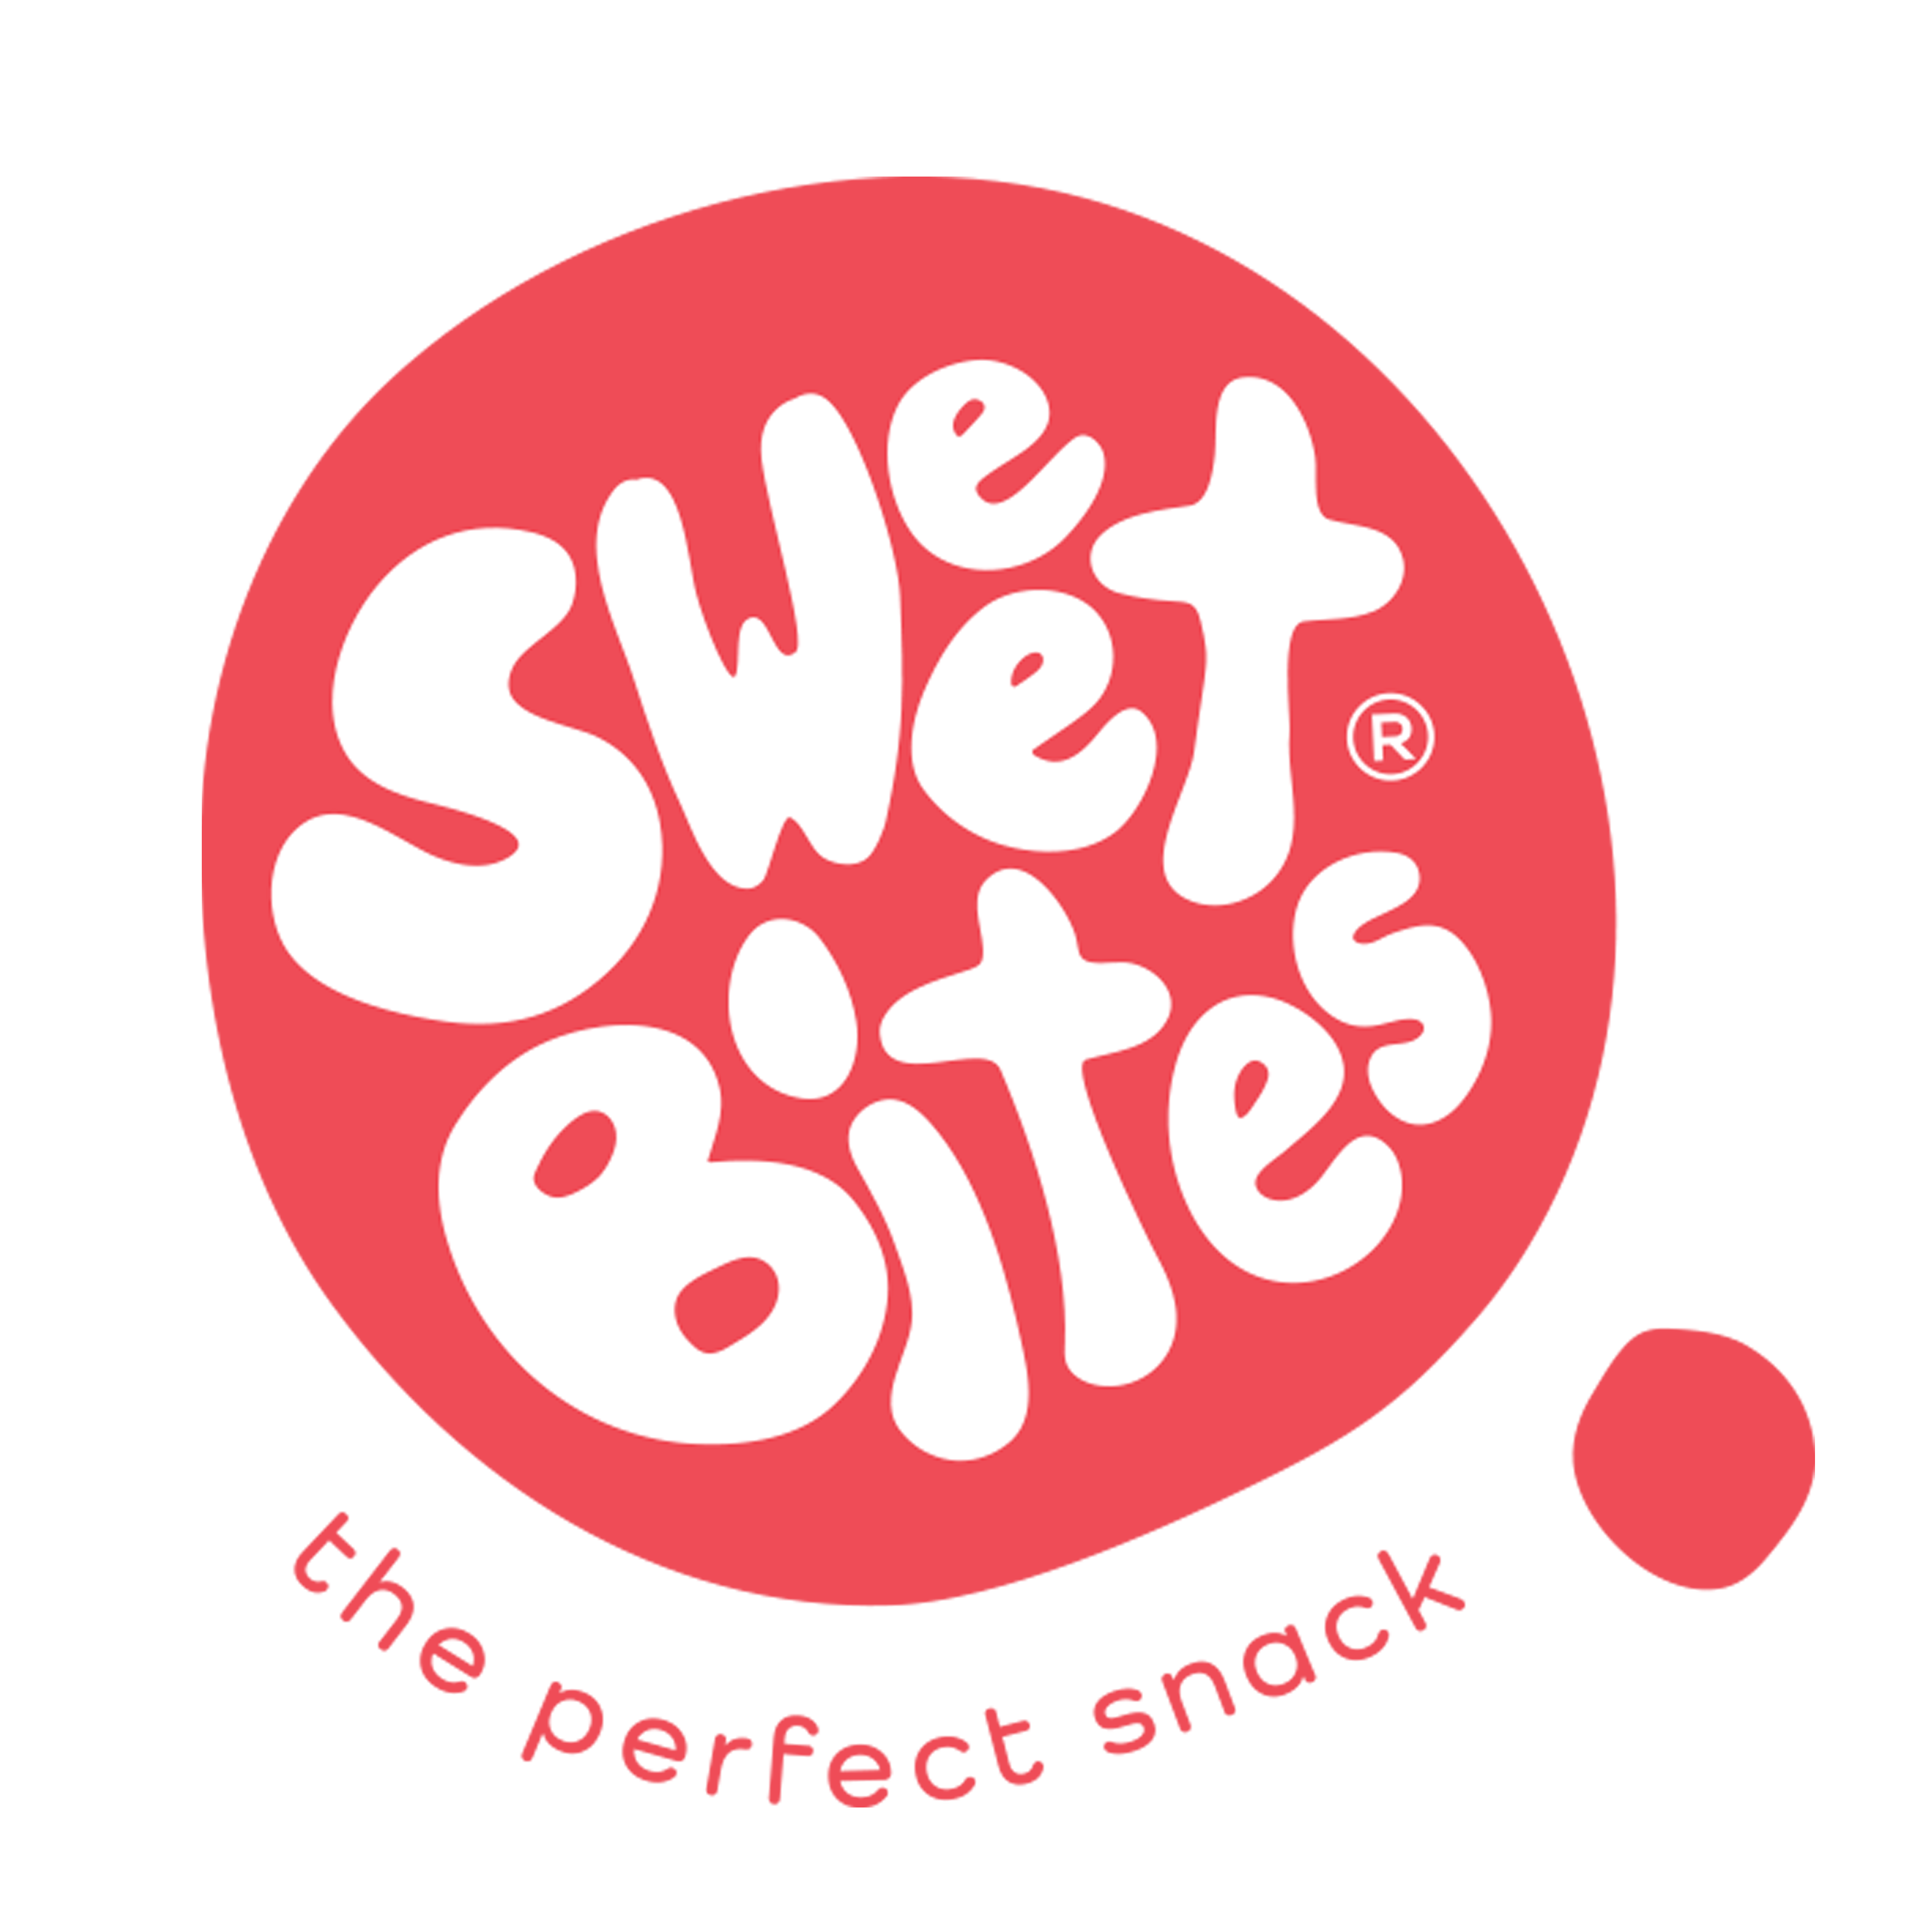 Sweet bites